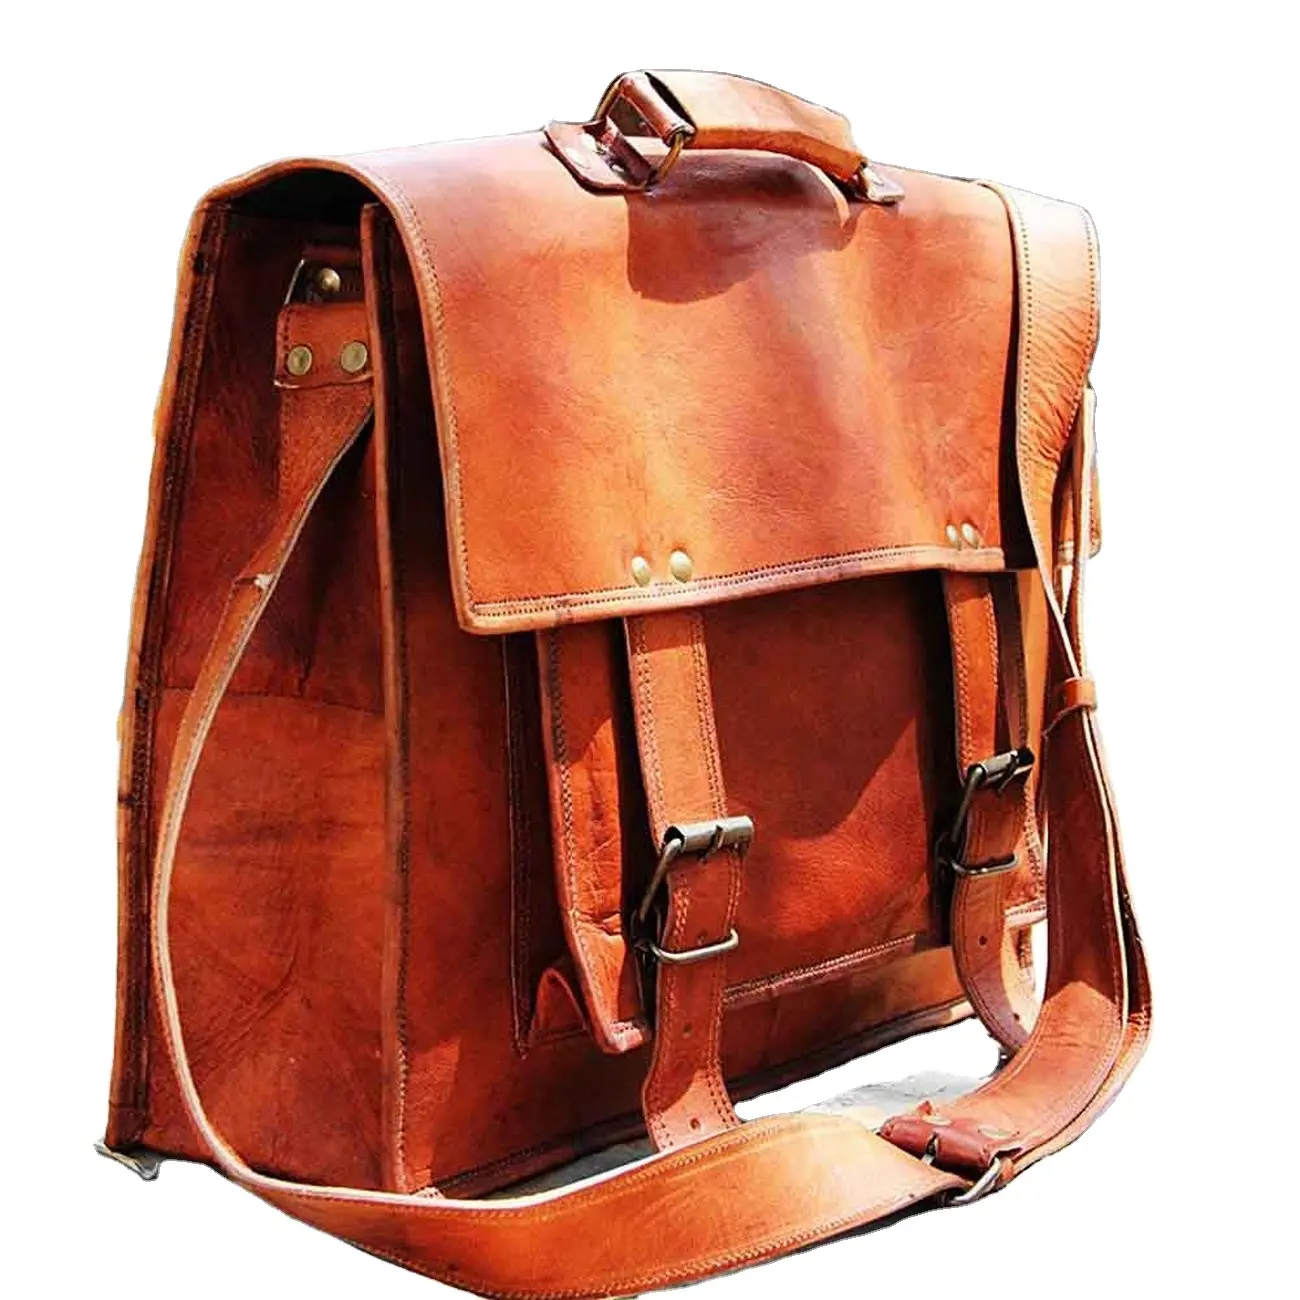 Goat Leather Satchel Bag Shoulder Bag cum Laptop Messenger or - Soft Leather Vintage look Lightweight trendy